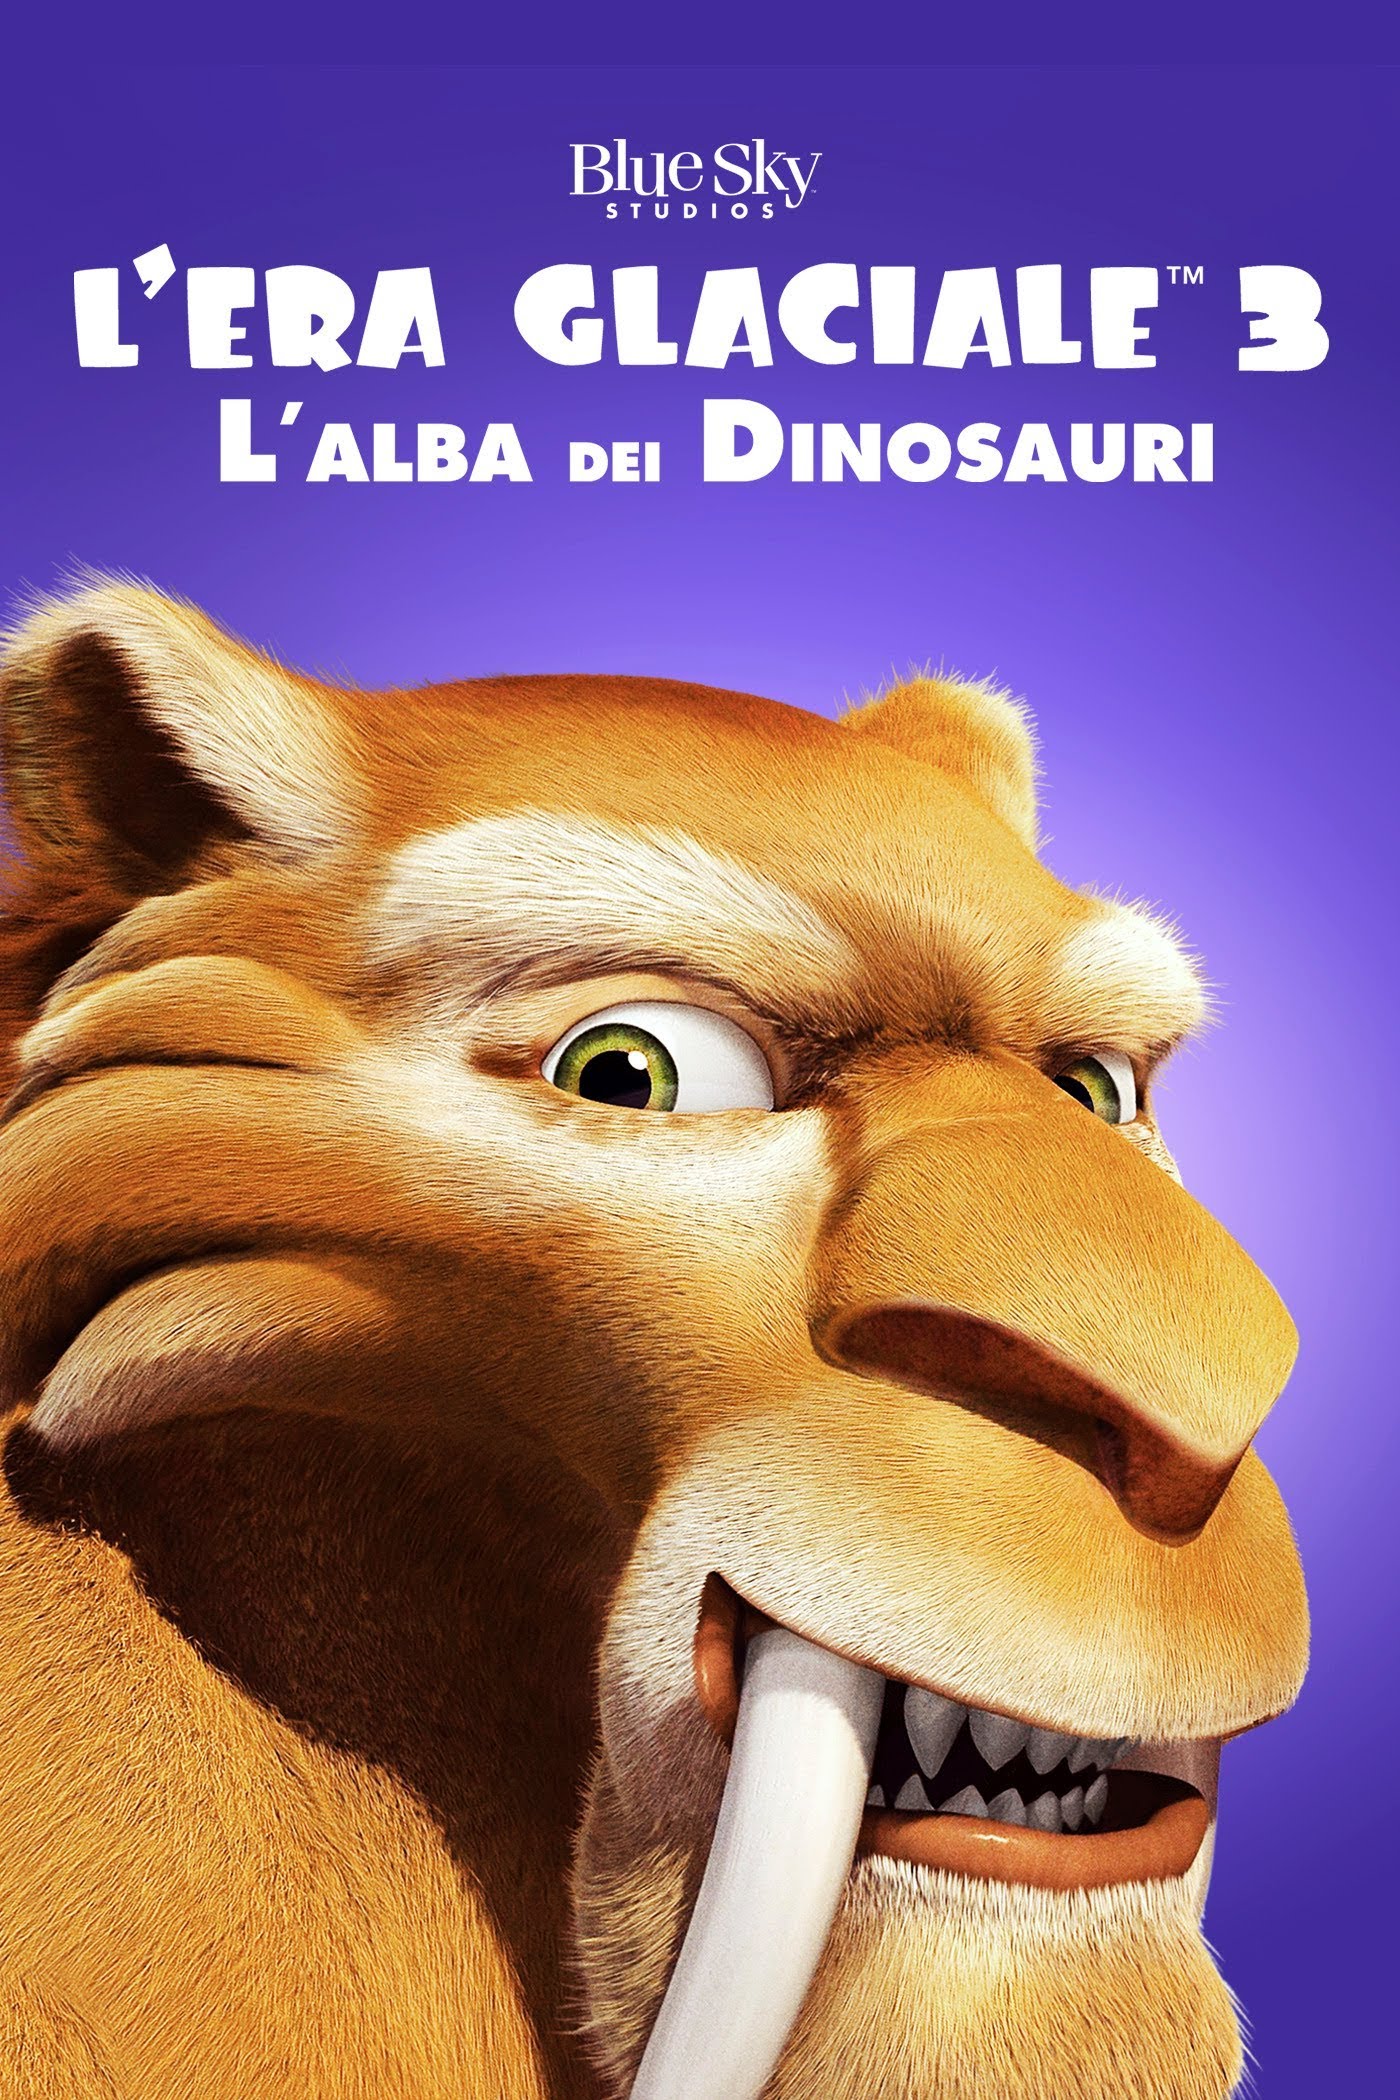 L’era glaciale 3 – L’alba dei dinosauri [HD] (2009)